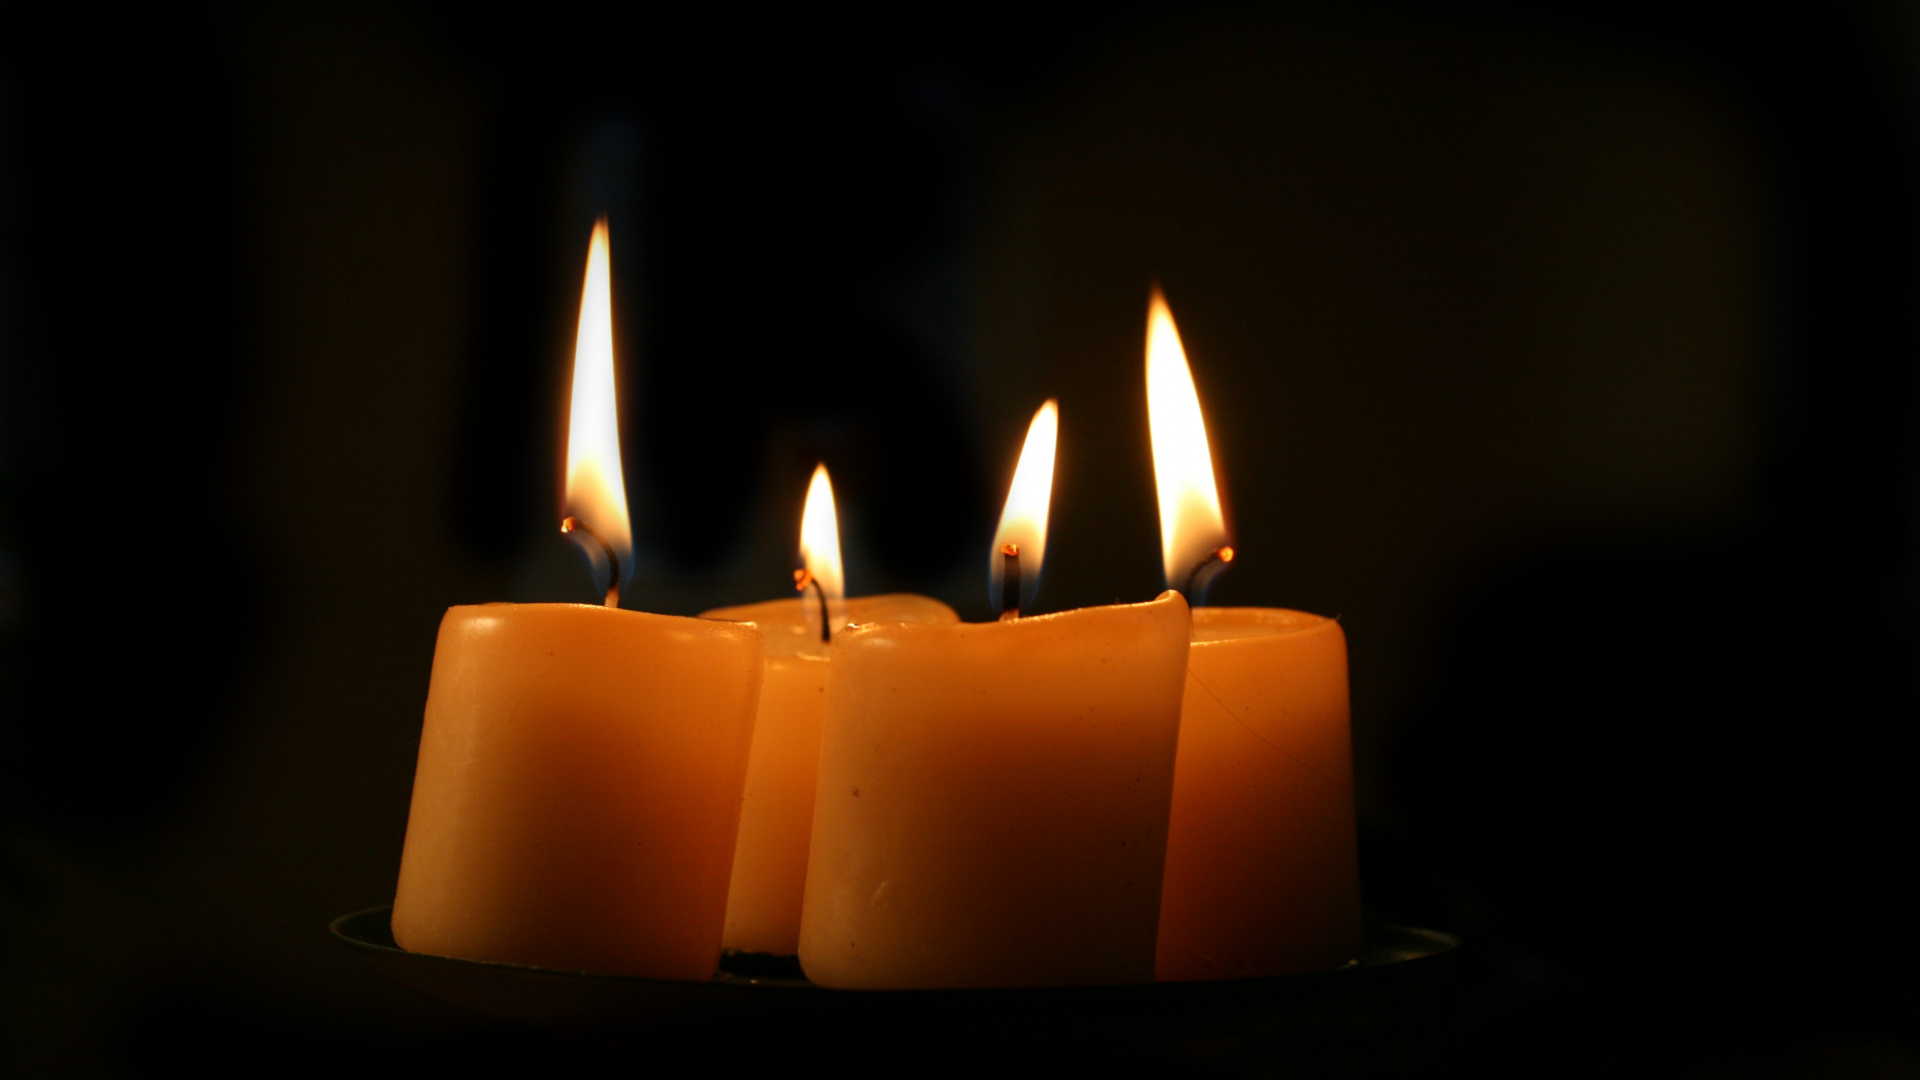 3 Brennende Kerzen Auf Schwarzem Hintergrund. Wallpaper in 1920x1080 Resolution